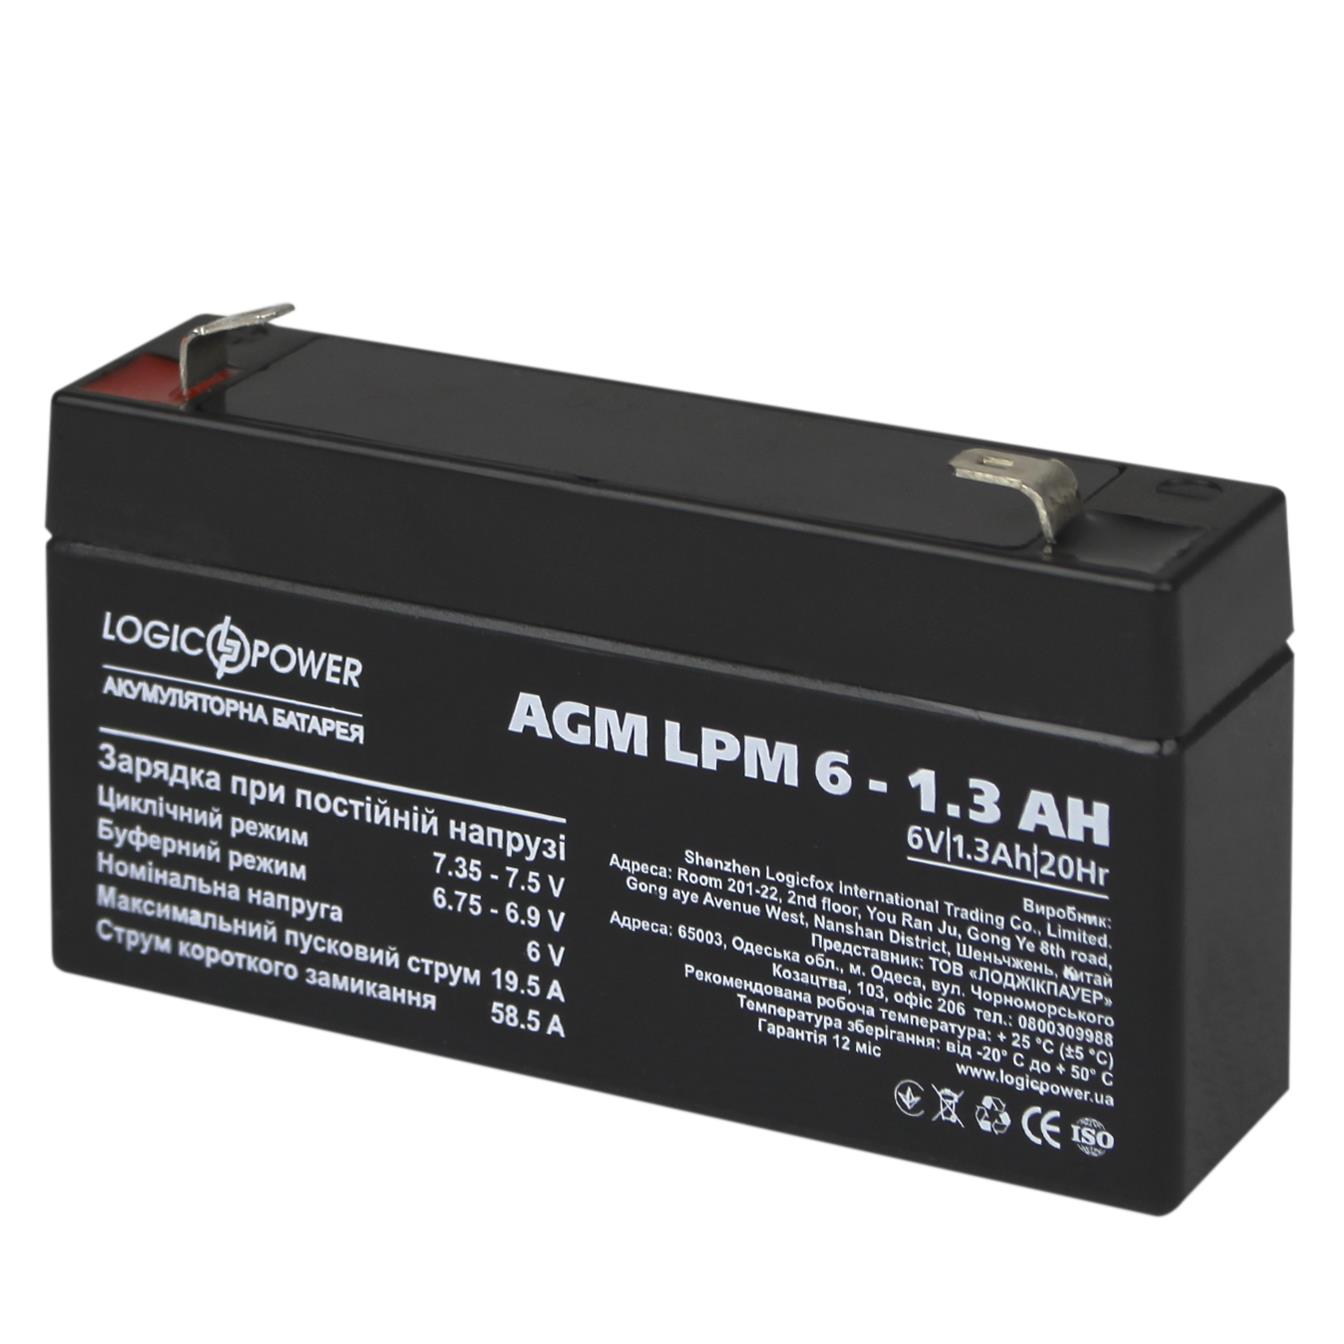 Аккумулятор свинцово-кислотный LogicPower AGM LPM 6V - 1.3 Ah (4157) в интернет-магазине, главное фото